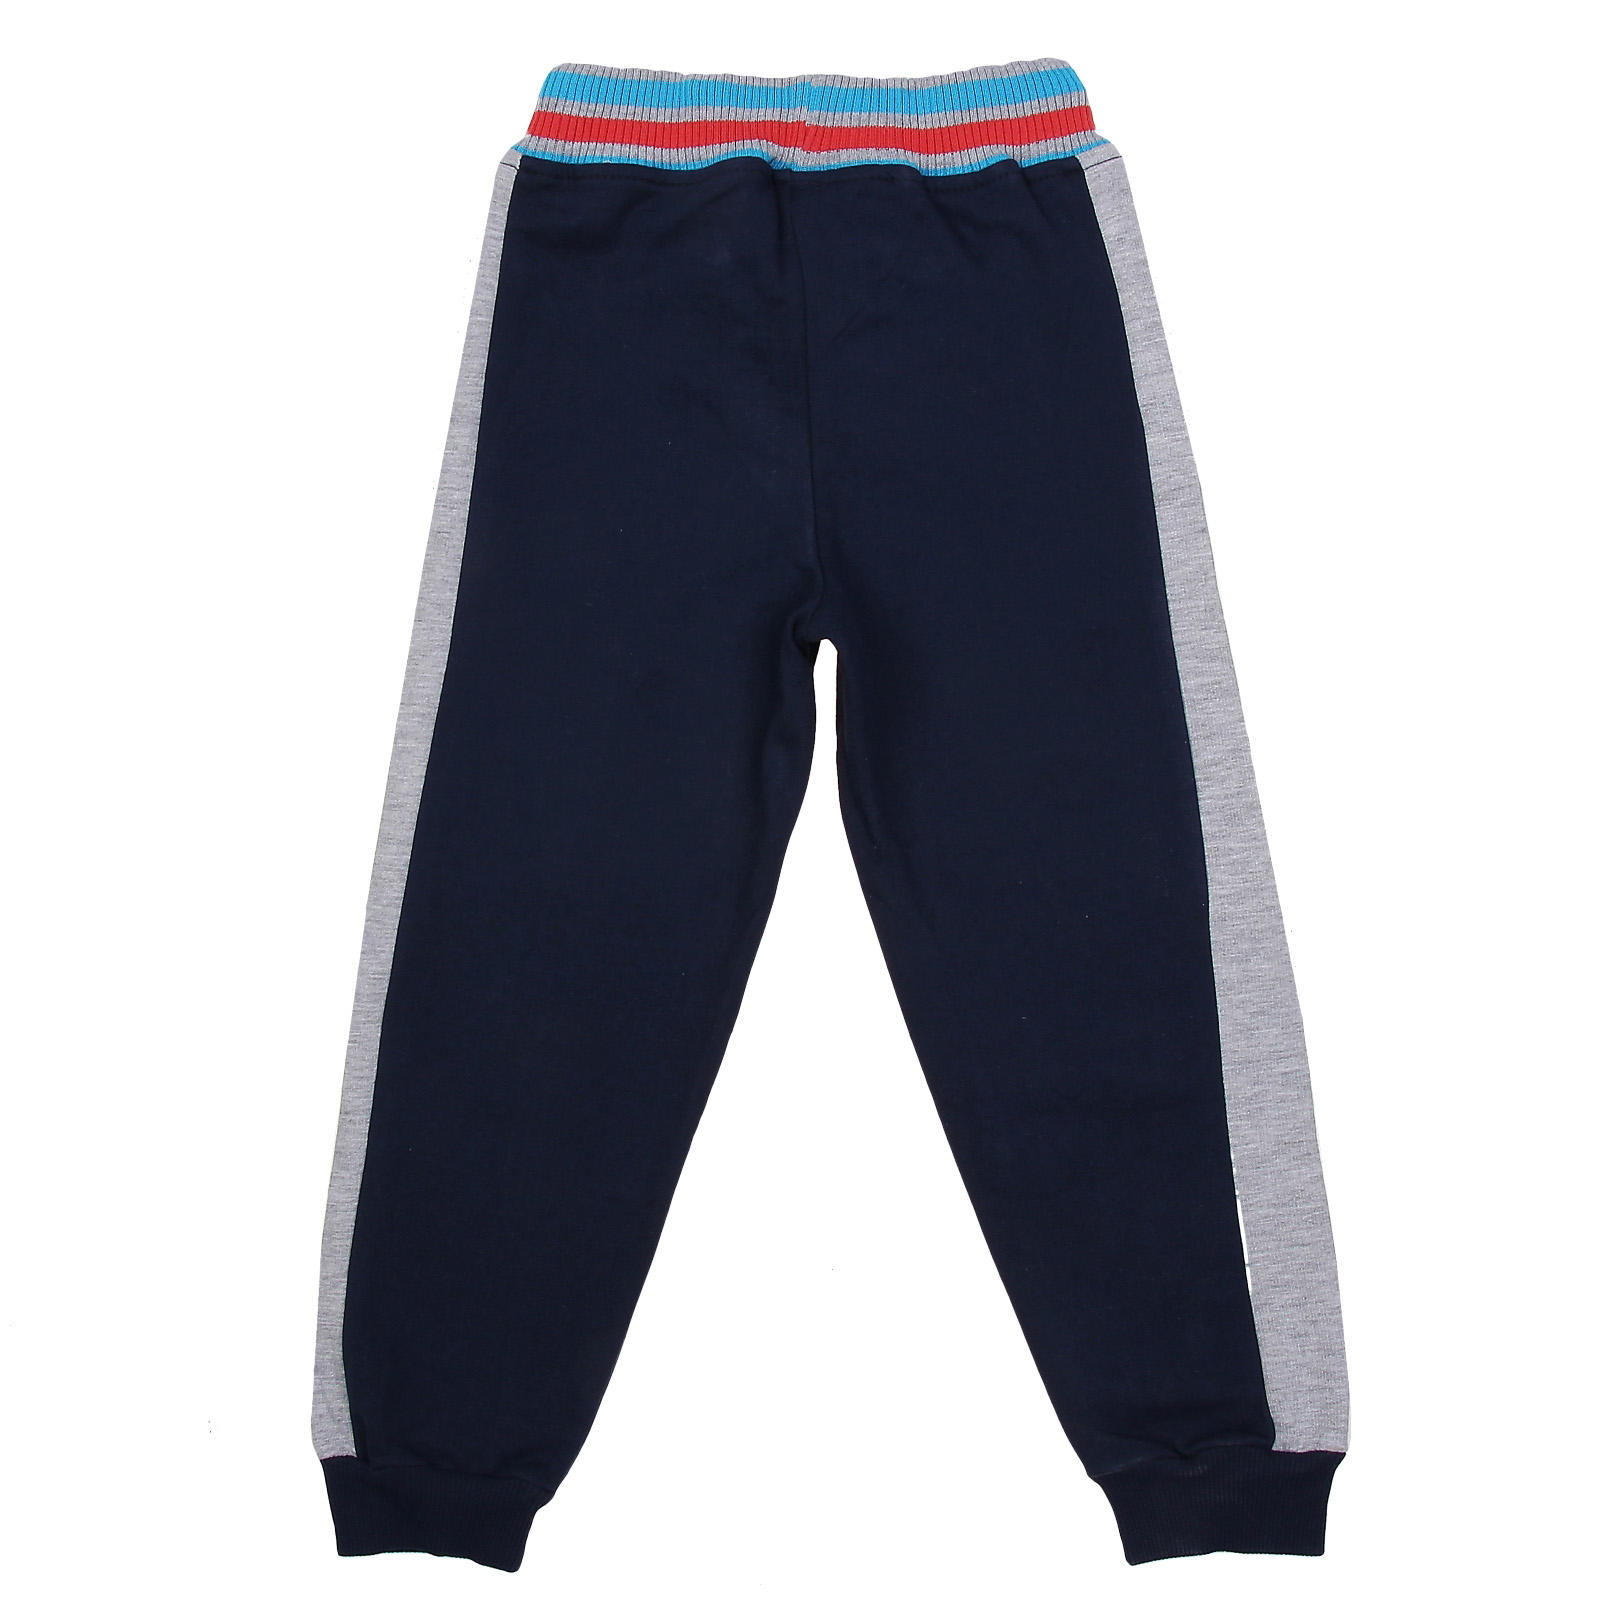 Спортивные штаны для мальчика, темно-синие, 98 см